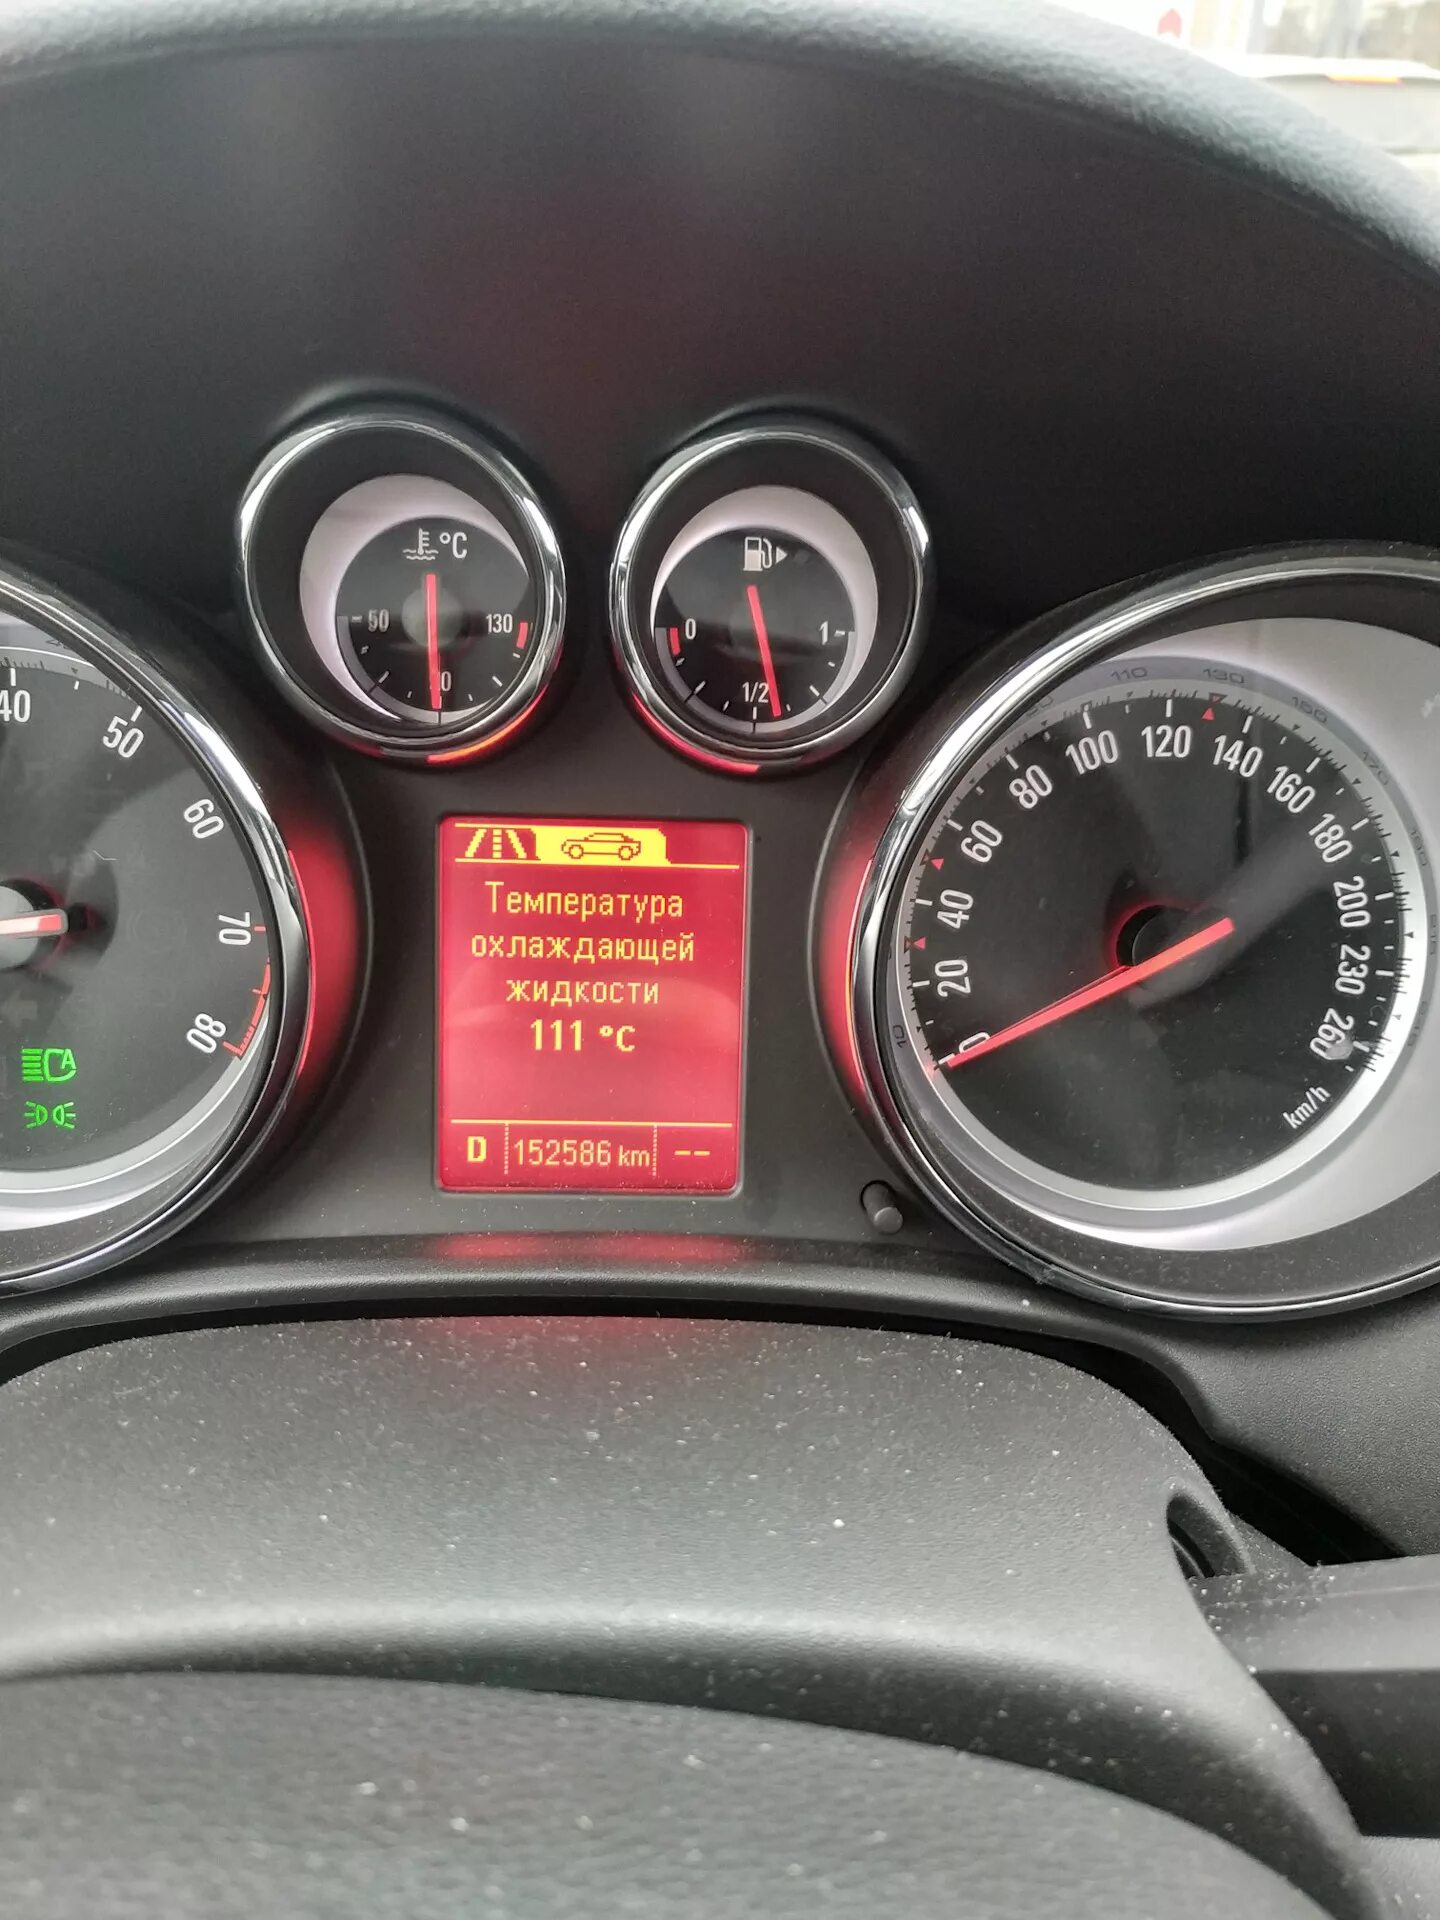 Приборная панель Opel Astra j, датчики антифриза. Opel Astra h рабочая температура двигателя.